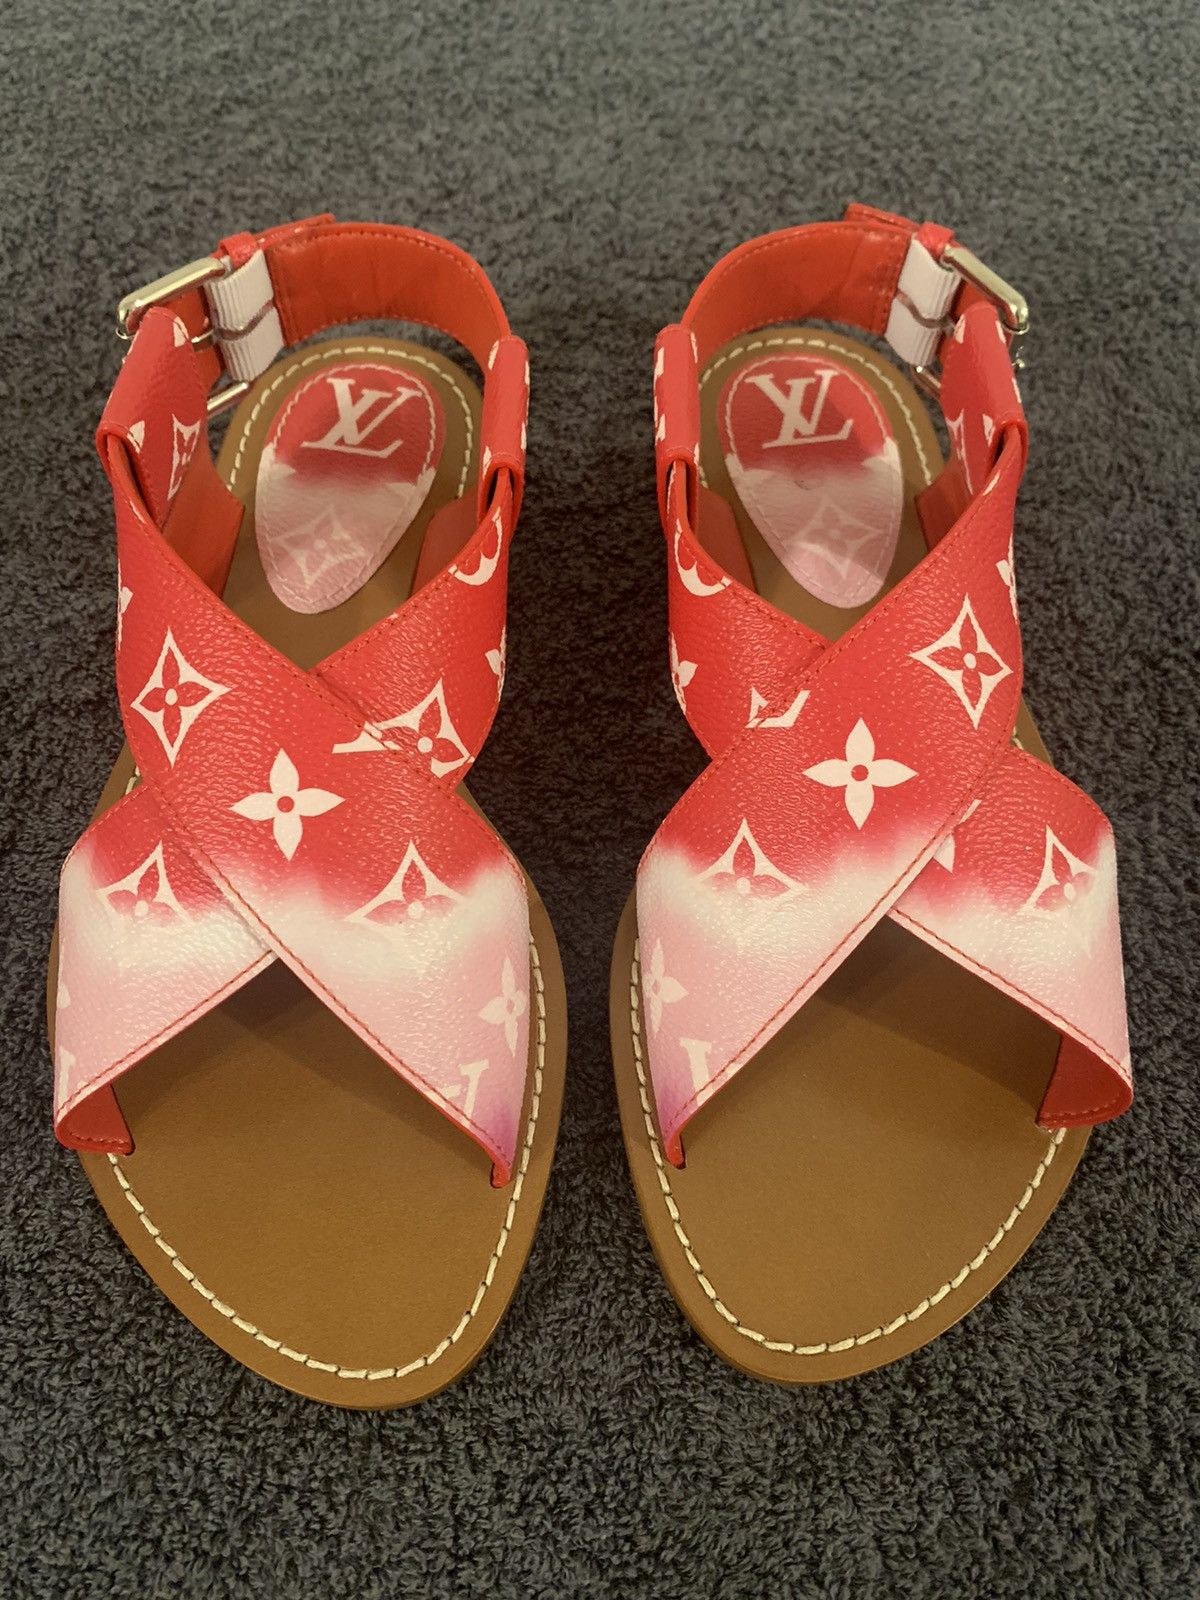 Sandals Louis Vuitton Palma Flat Sandals Size 37.5 EU